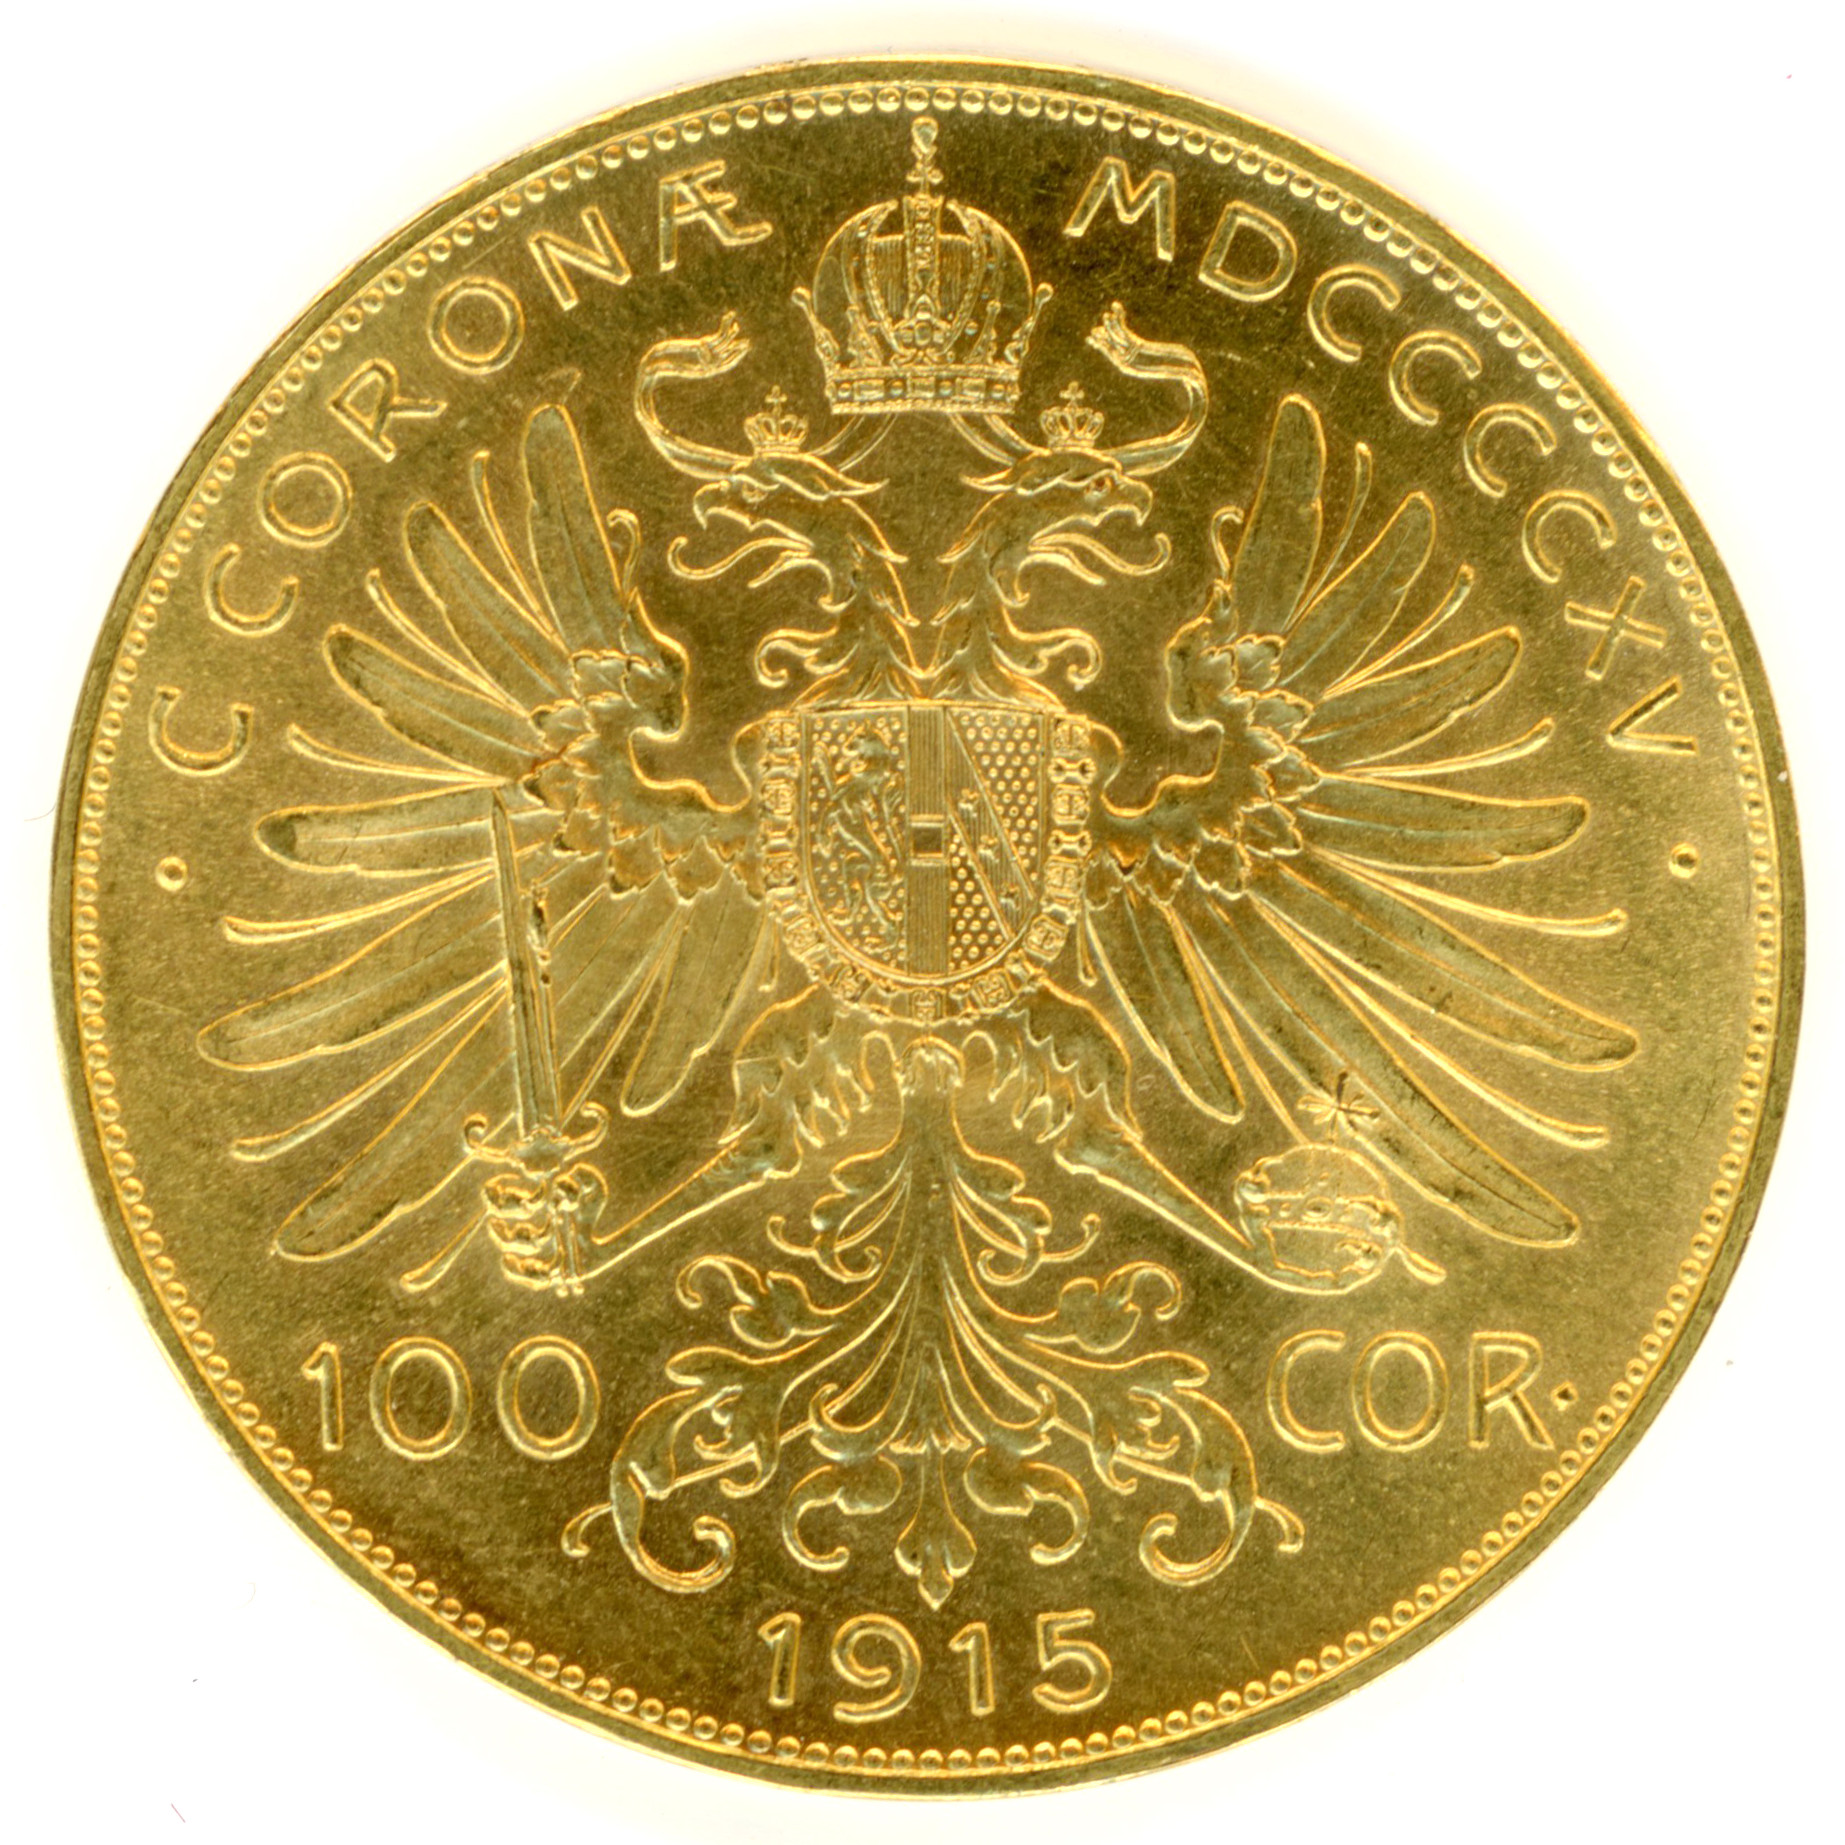 Autriche - 100 Couronnes - 1915 revers